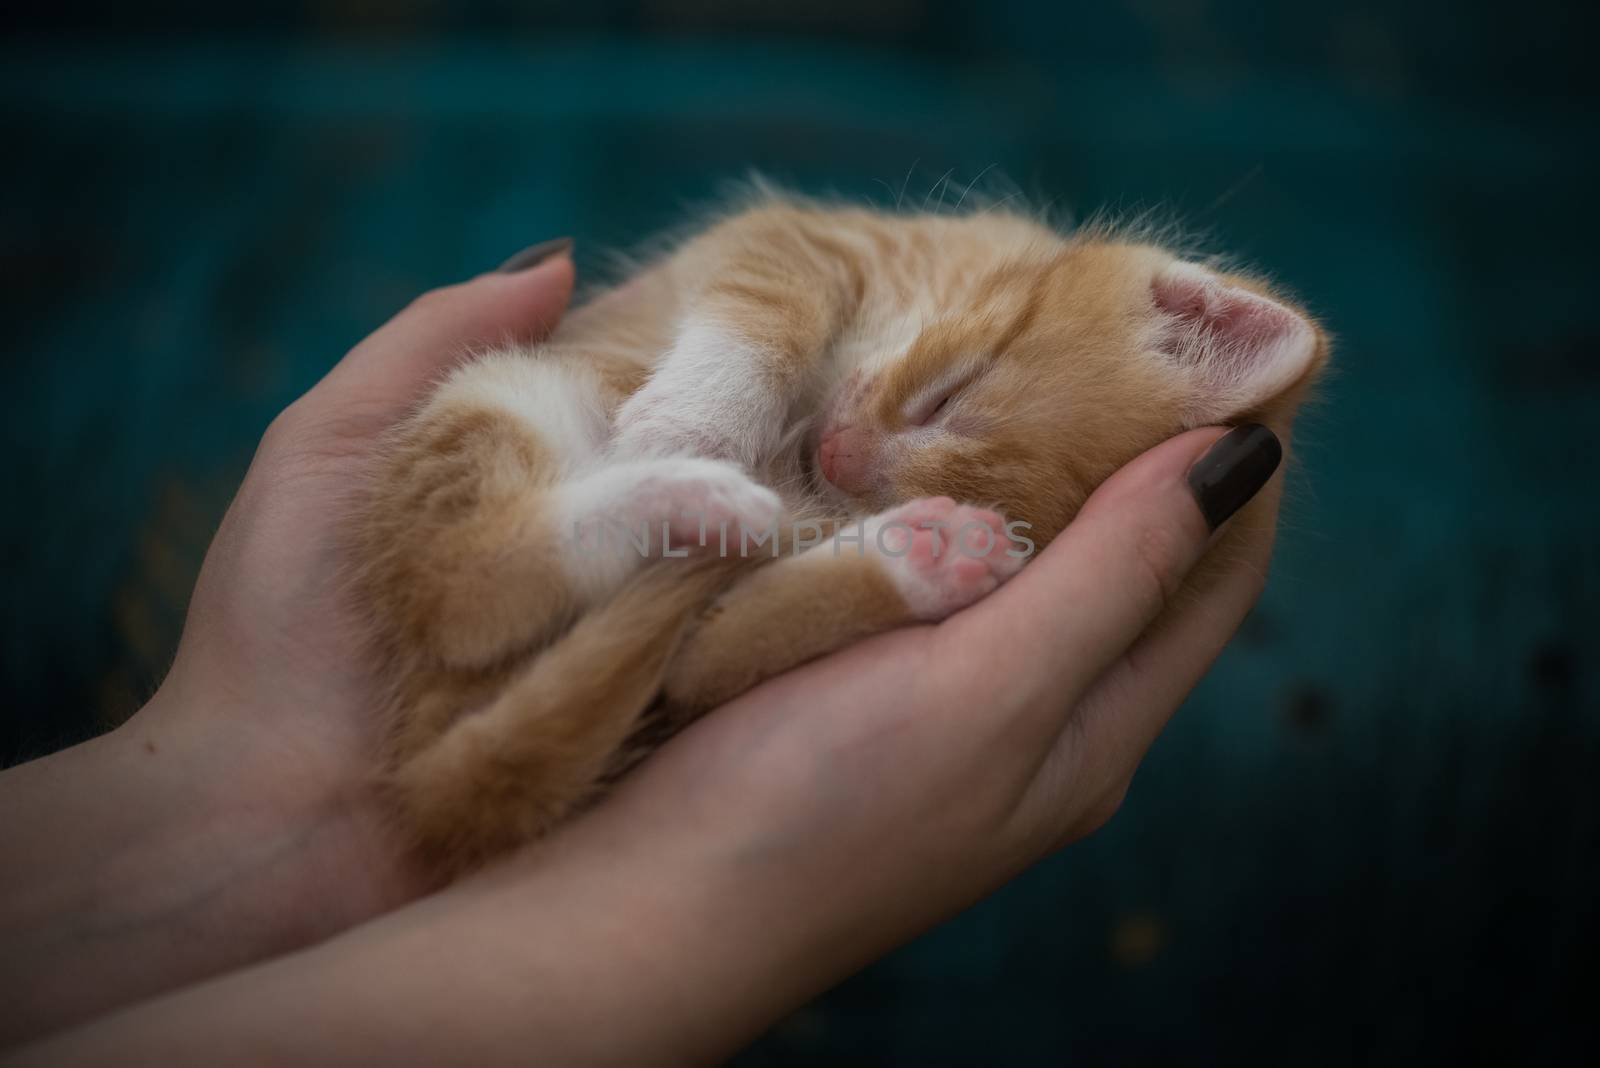 Kitten in human hands by nickfox